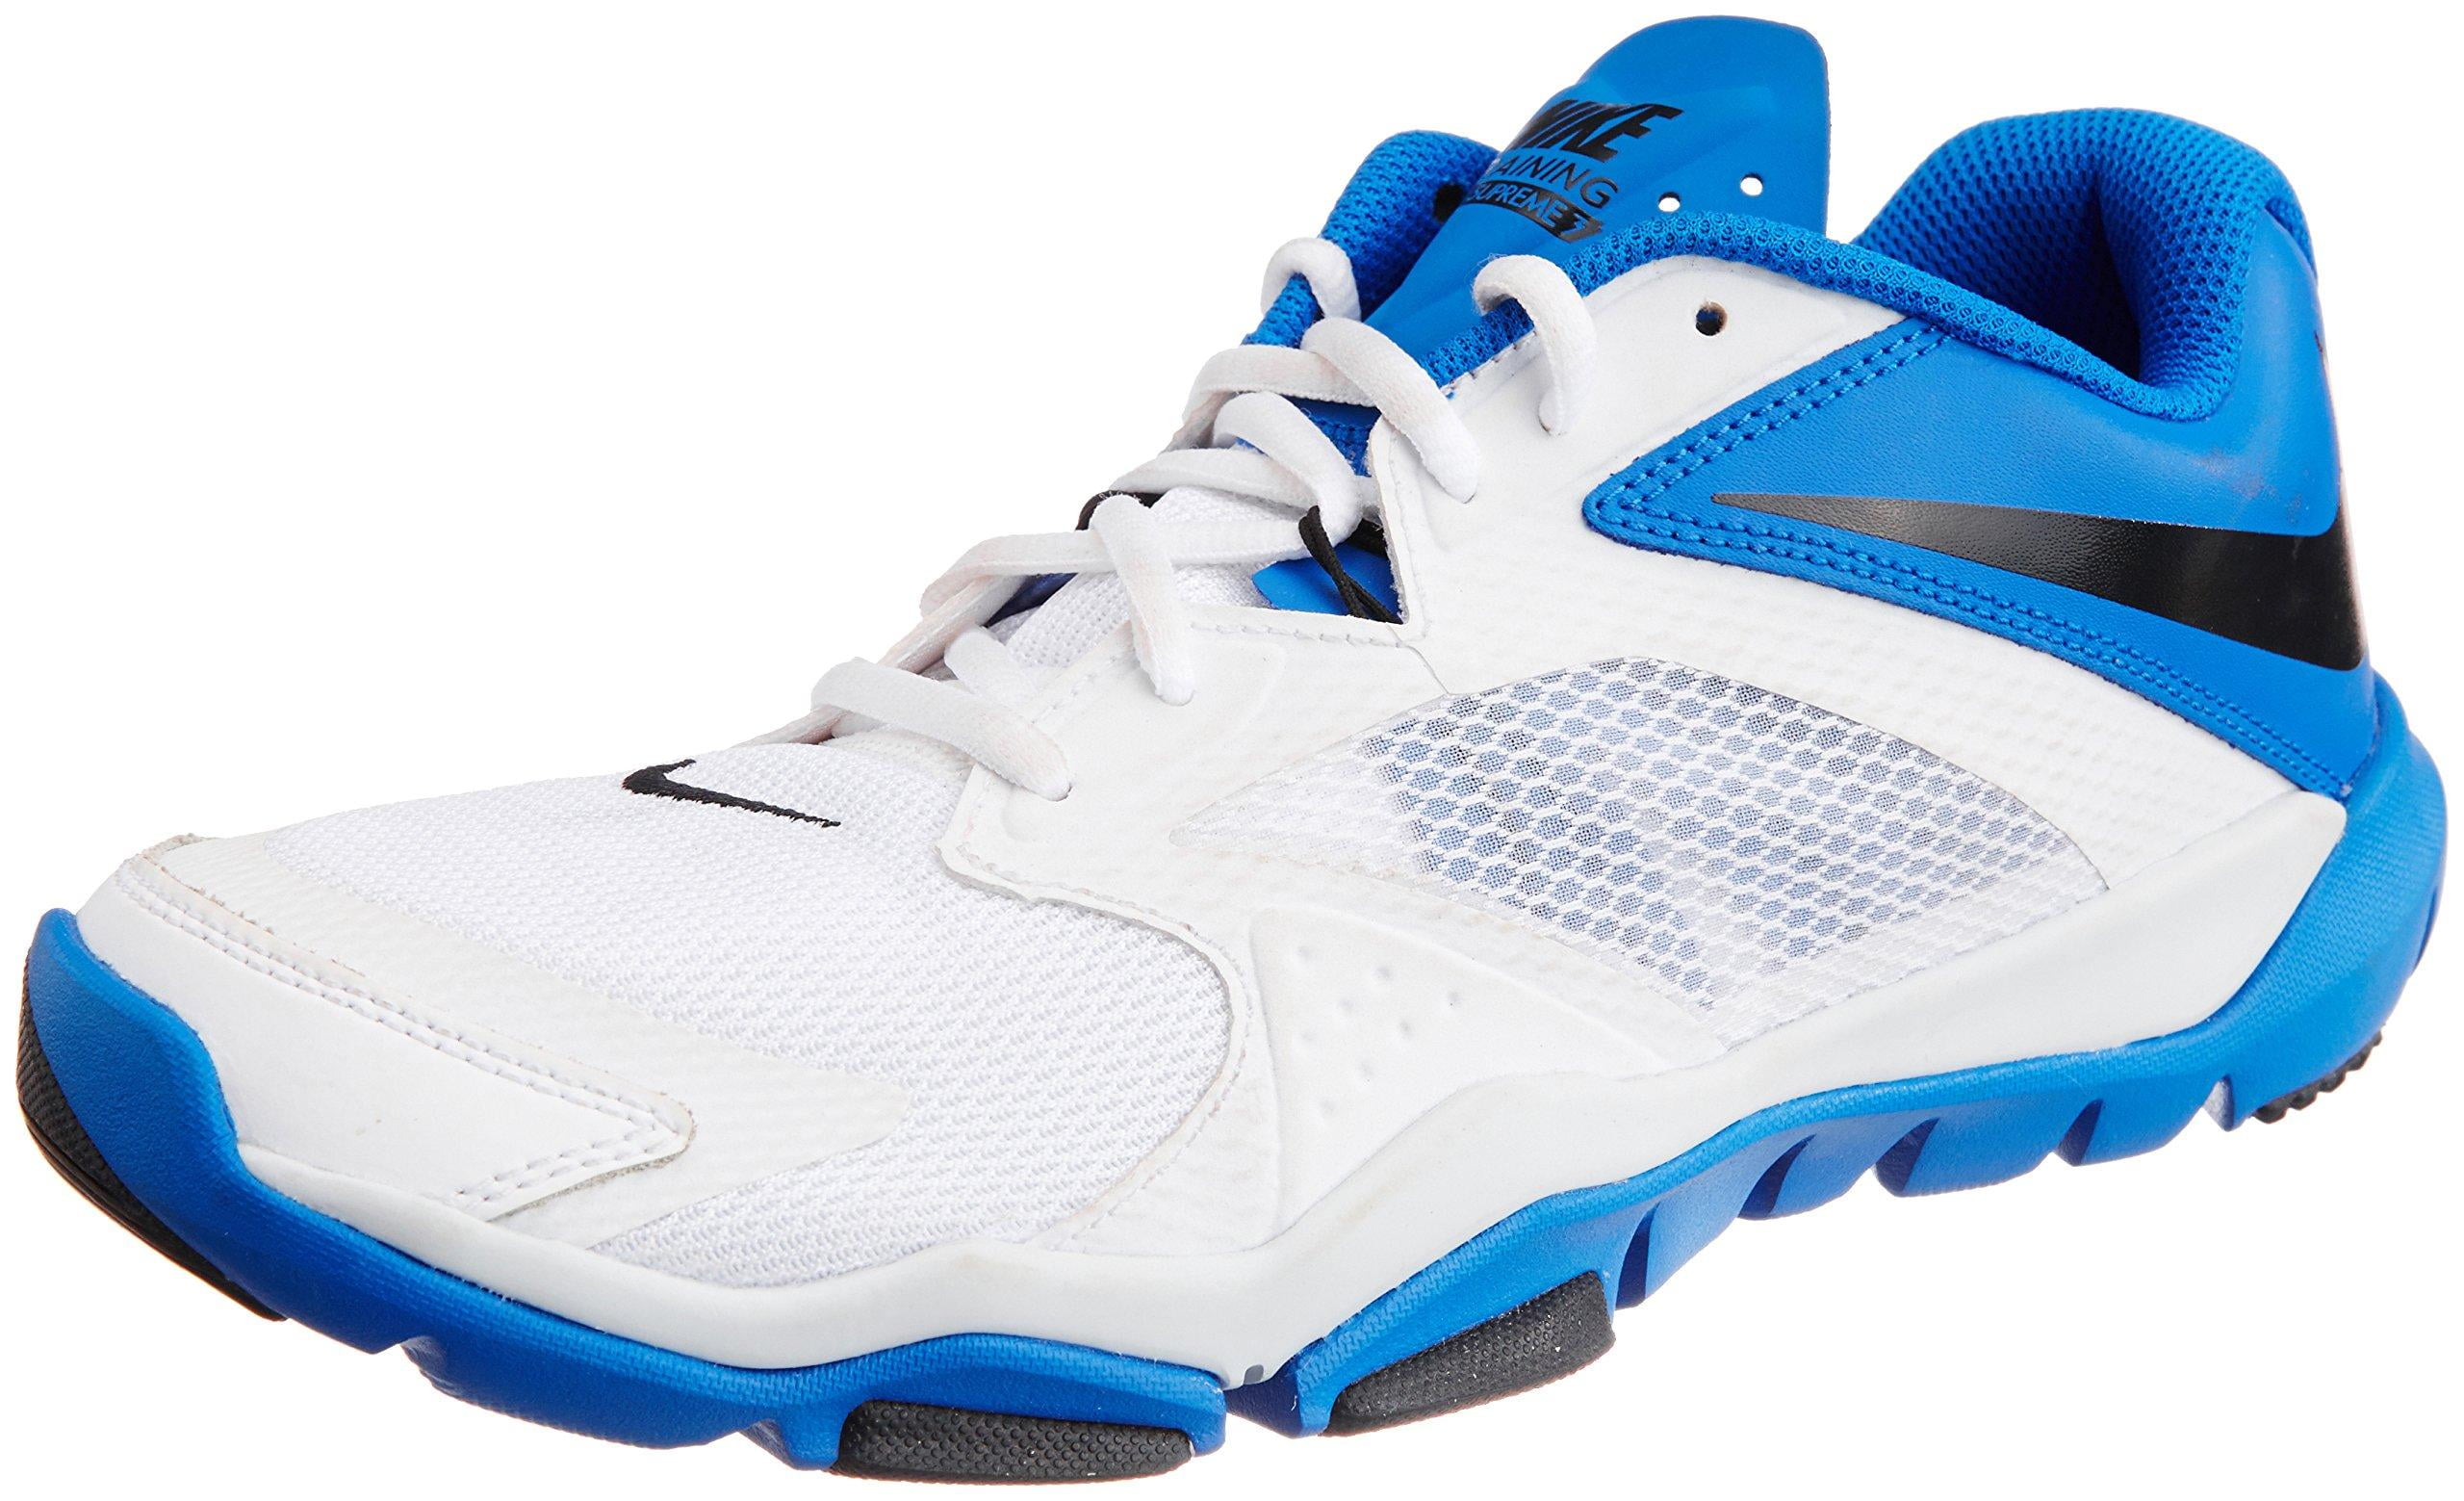 Leyes y regulaciones borgoña alcanzar Nike Men's Flex Supreme TR 3 Running Shoe-White/Black/Hyper Cobalt -  Walmart.com